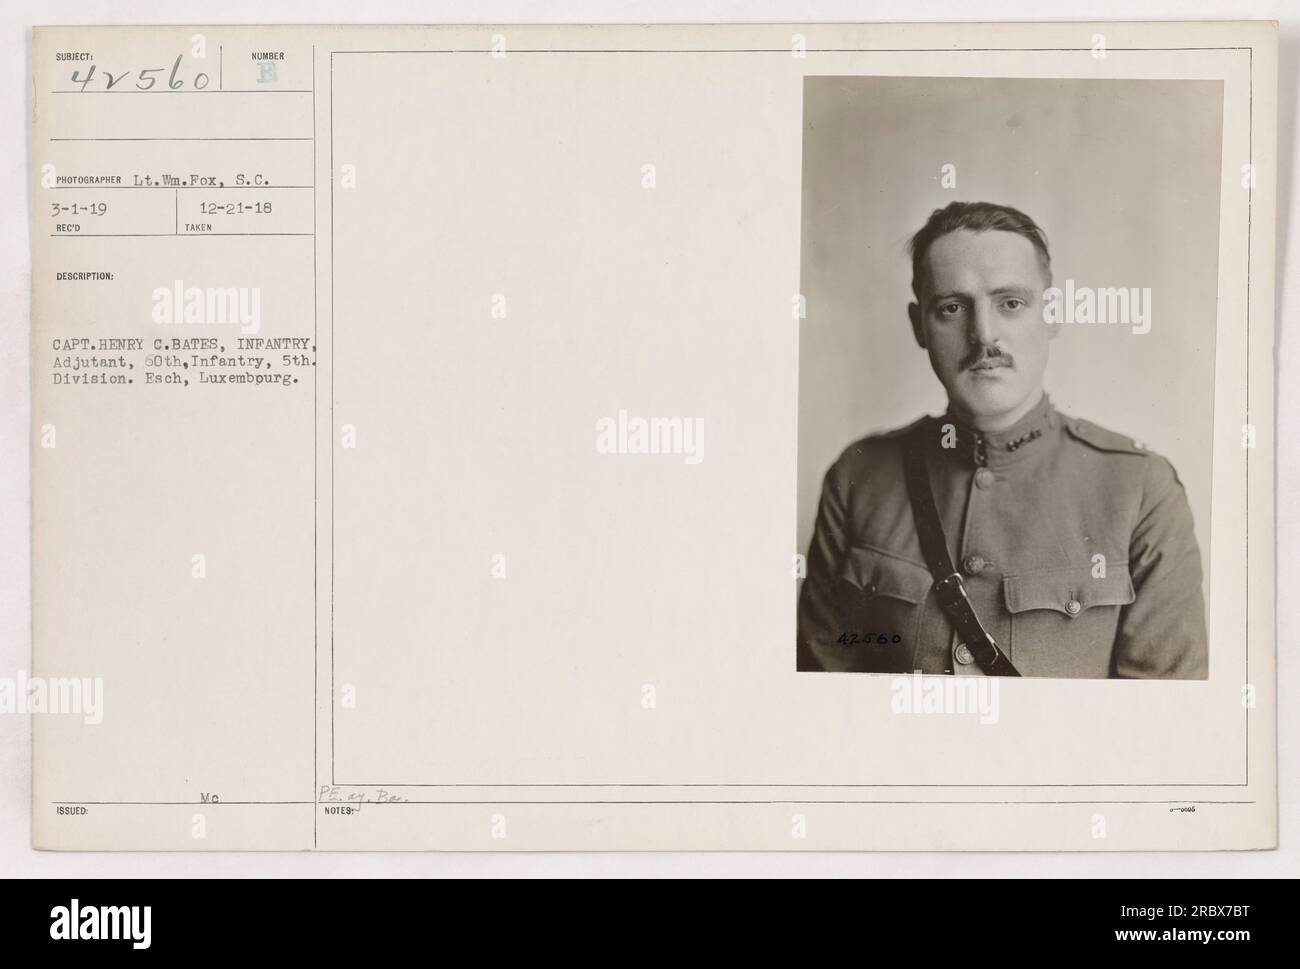 Il capitano Henry C. Bates, aiutante della 60th Infantry, 5th Division, è stato catturato in questa fotografia. Presa a Esch, Lussemburgo, il 21 dicembre 1918, dal tenente WN. Fox, è stato rilasciato con il numero 42560. Questi dettagli sono stati registrati il 3 gennaio 1919. Foto Stock